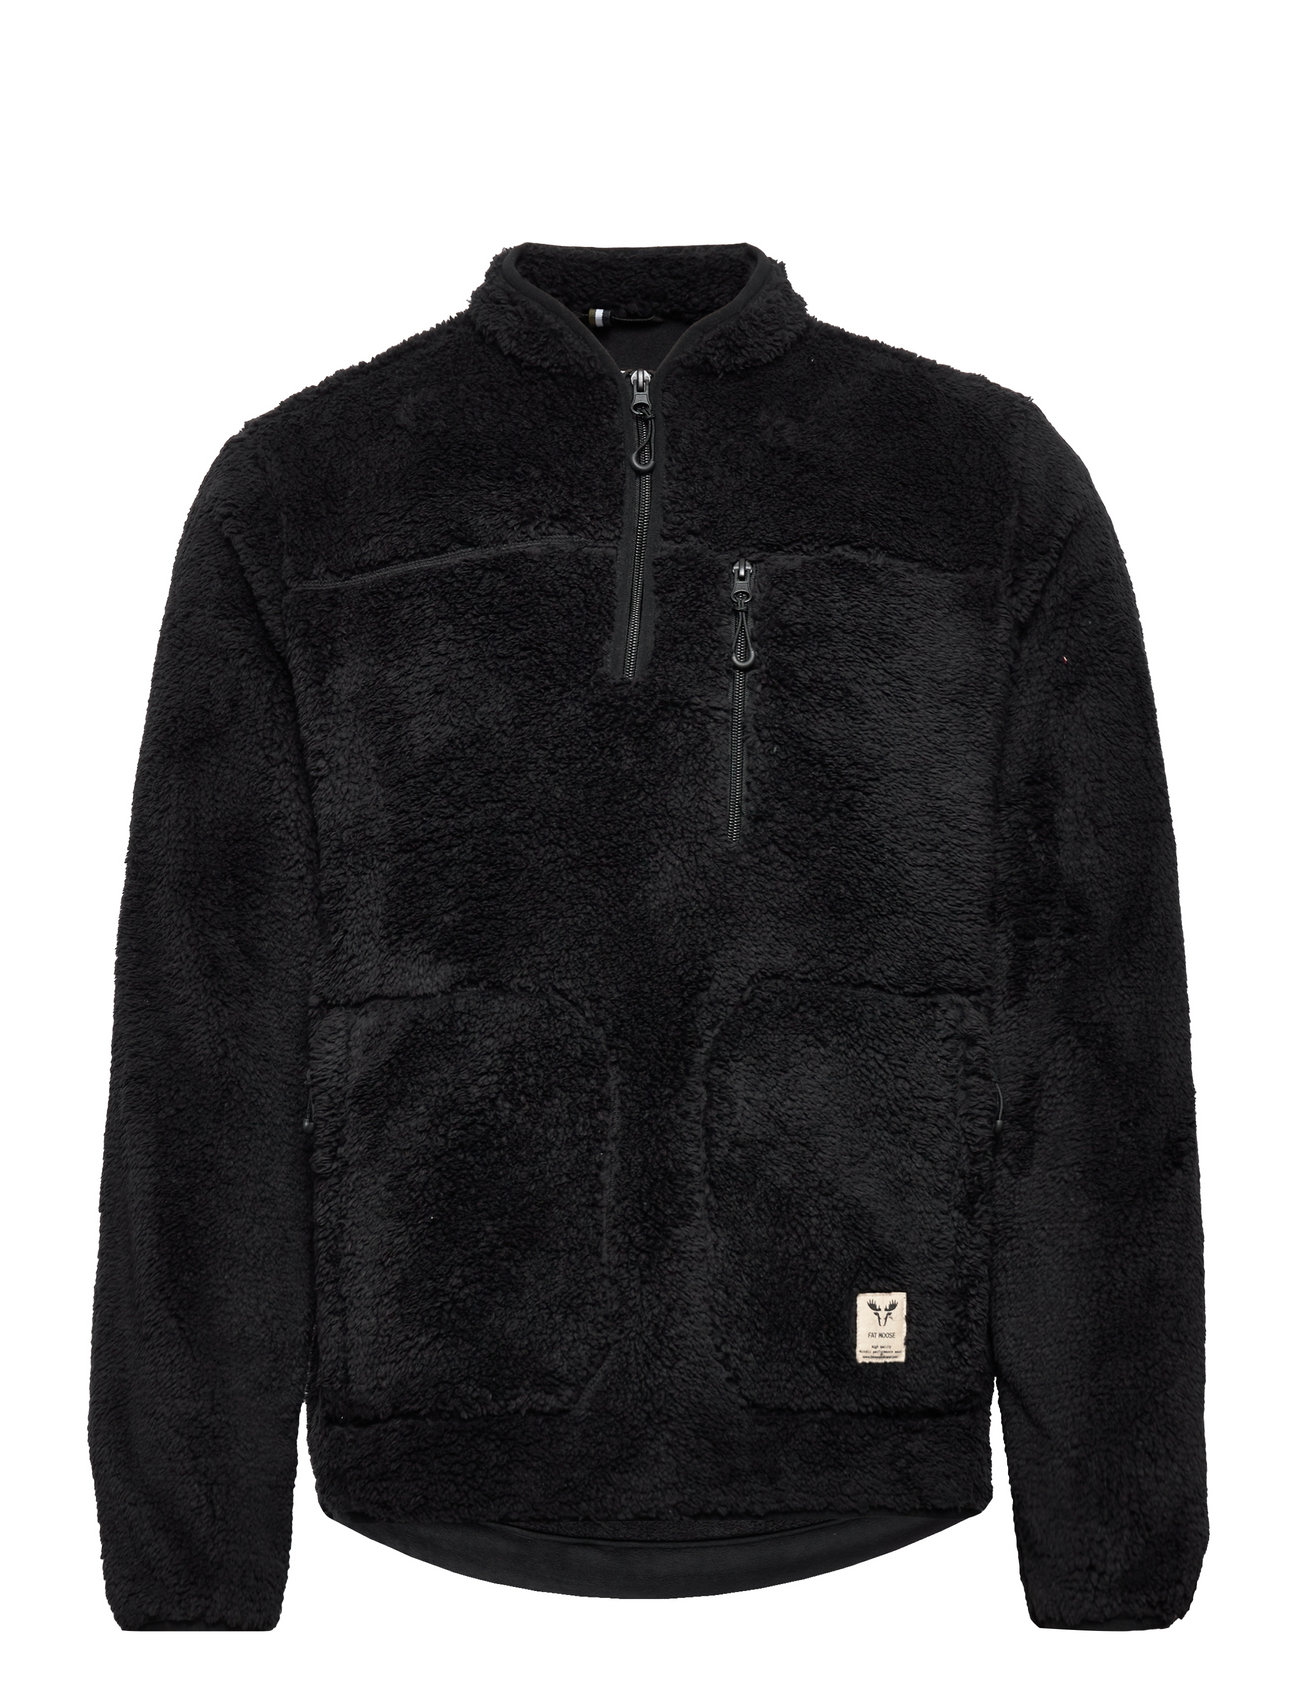 Pine Half Zip Fleece Tops Sweat-shirts & Hoodies Fleeces & Midlayers Black Fat Moose